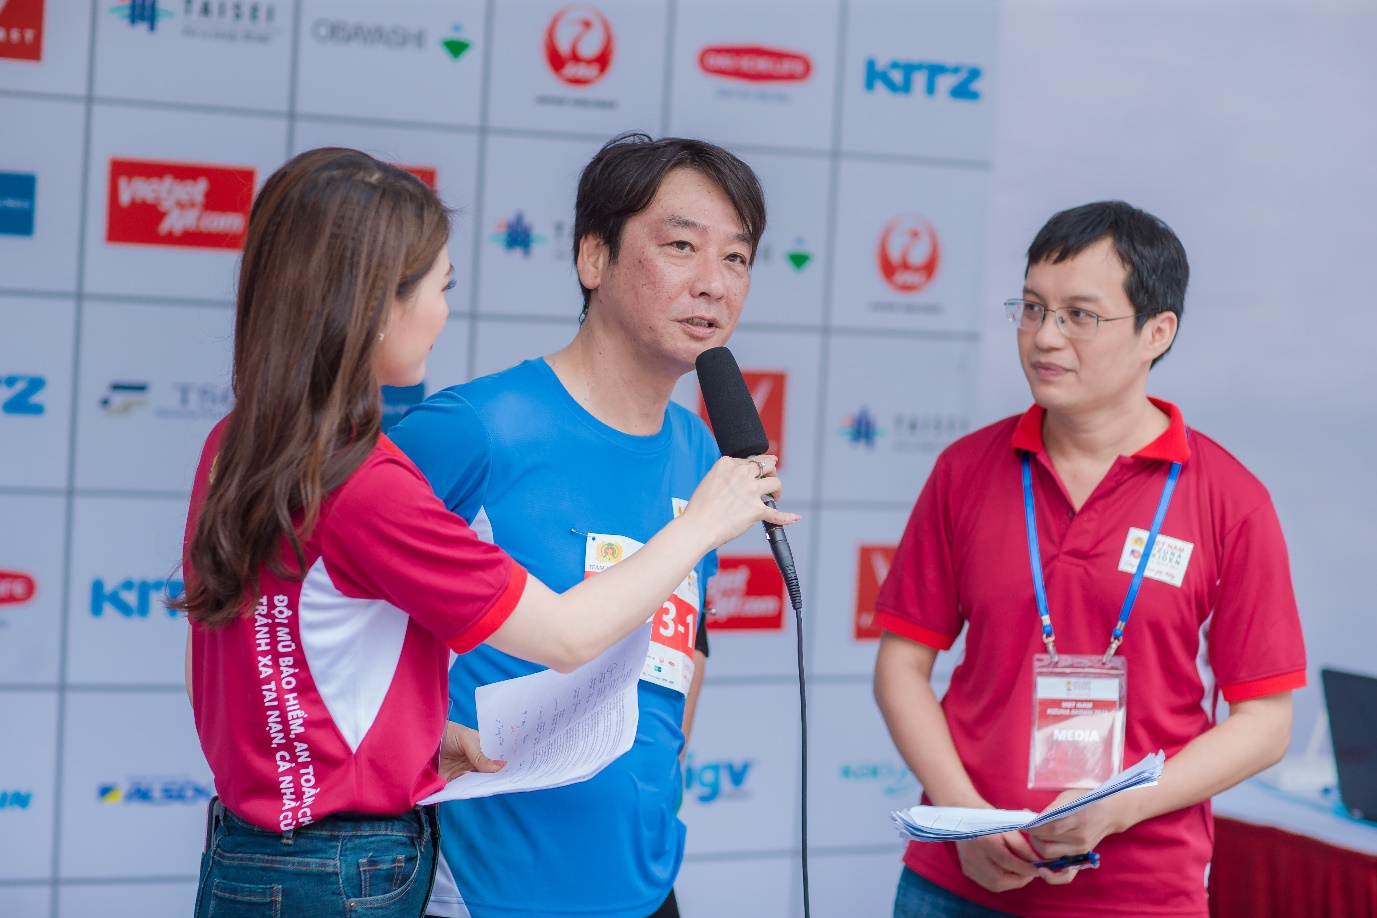 Epson đồng hành cùng giải chạy Kizuna Ekiden 2019 thắt chặt hữu nghị Việt Nam – Nhật Bản